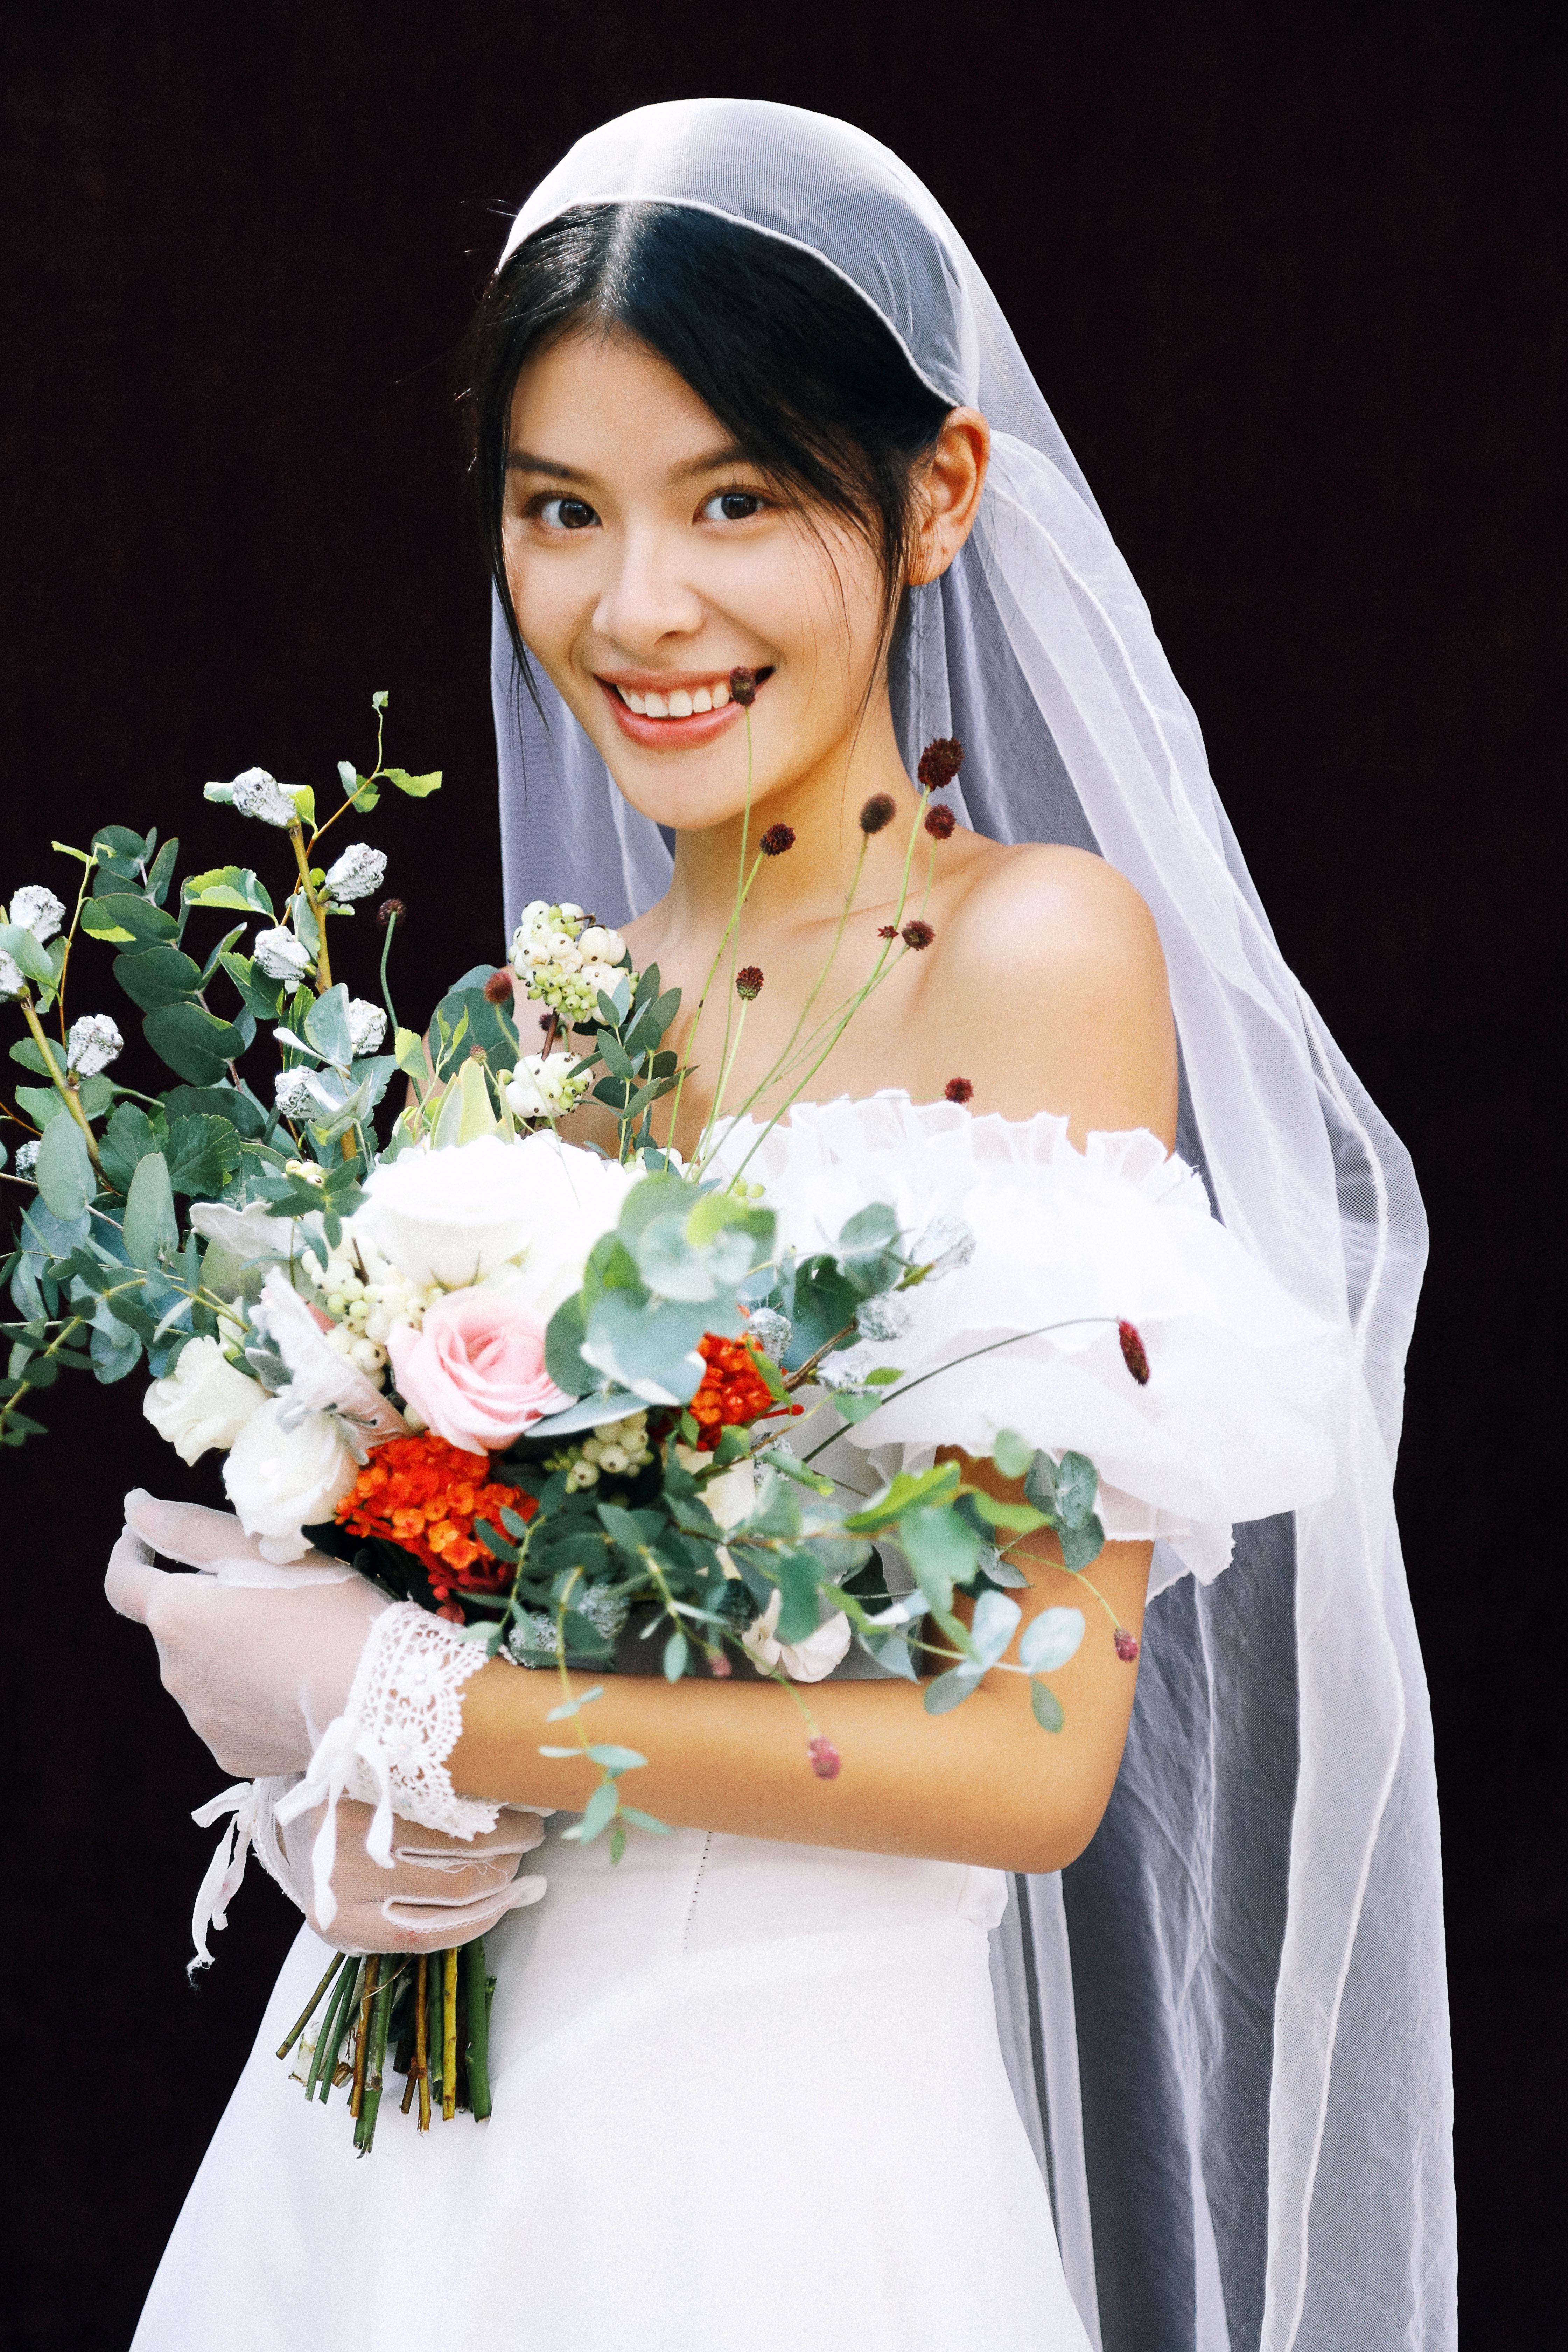 全新《SECRET》系列 - 明星范 - 古摄影婚纱艺术-古摄影成都婚纱摄影艺术摄影网